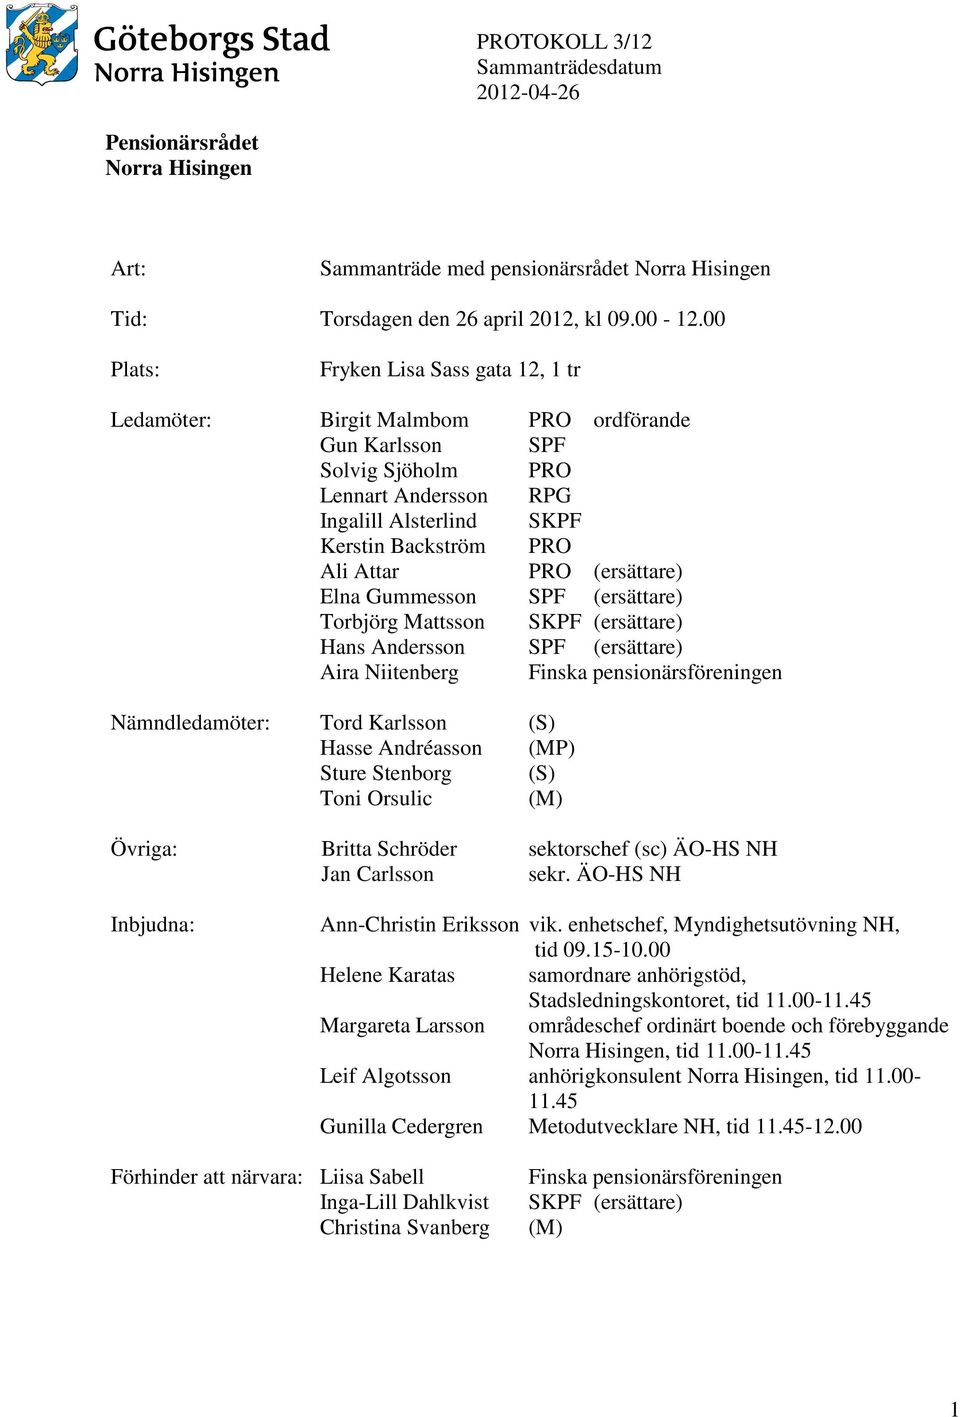 PRO (ersättare) Elna Gummesson SPF (ersättare) Torbjörg Mattsson SKPF (ersättare) Hans Andersson SPF (ersättare) Aira Niitenberg Finska pensionärsföreningen Nämndledamöter: Tord Karlsson (S) Hasse